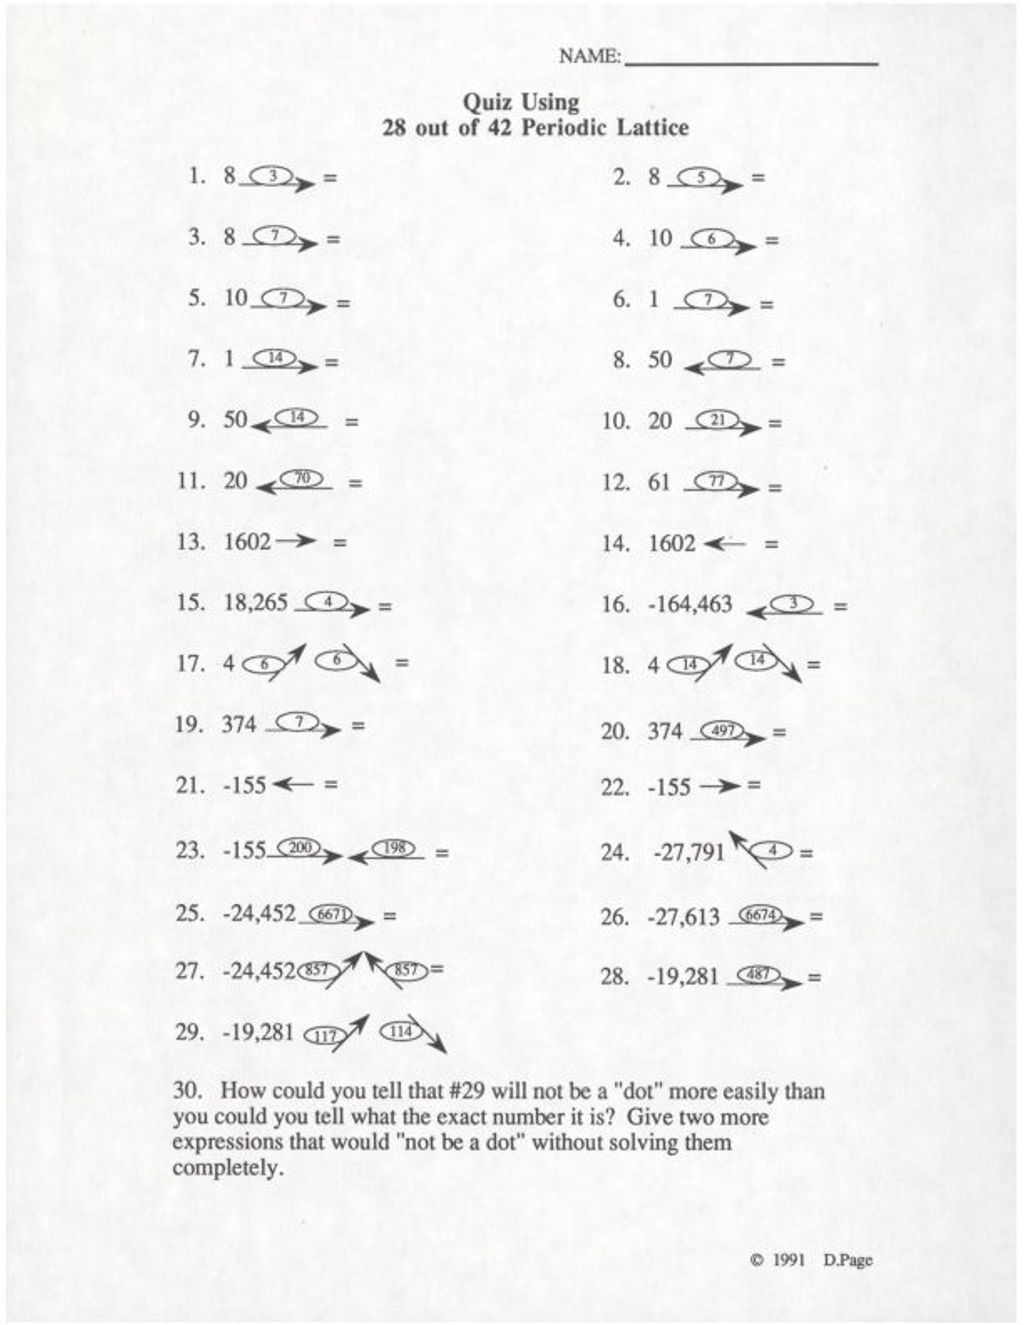 Miniature of Quiz Using 28 out of 42 Periodic Lattice (1991)